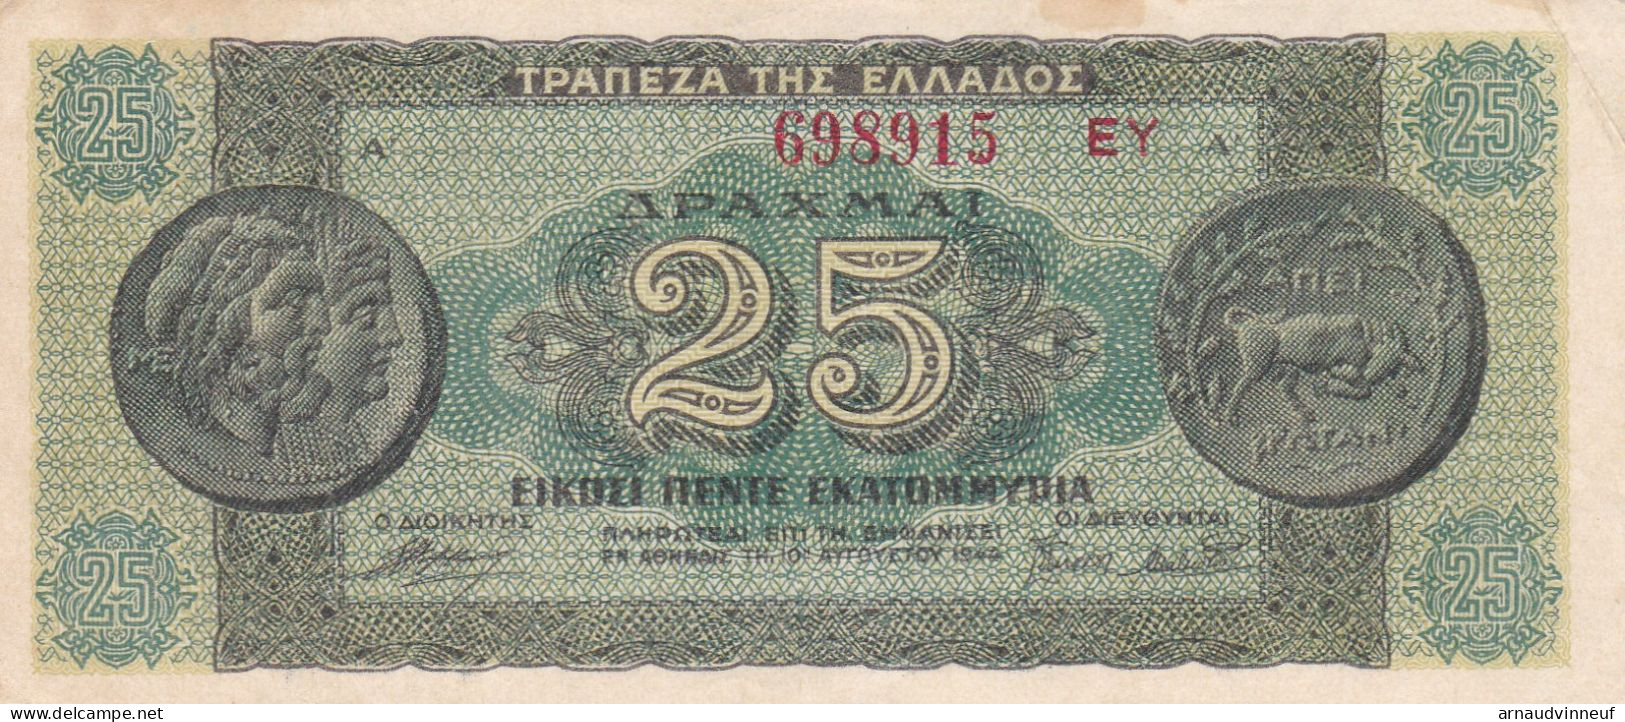 BILLET 25 EKATOMMYPIA - Grecia